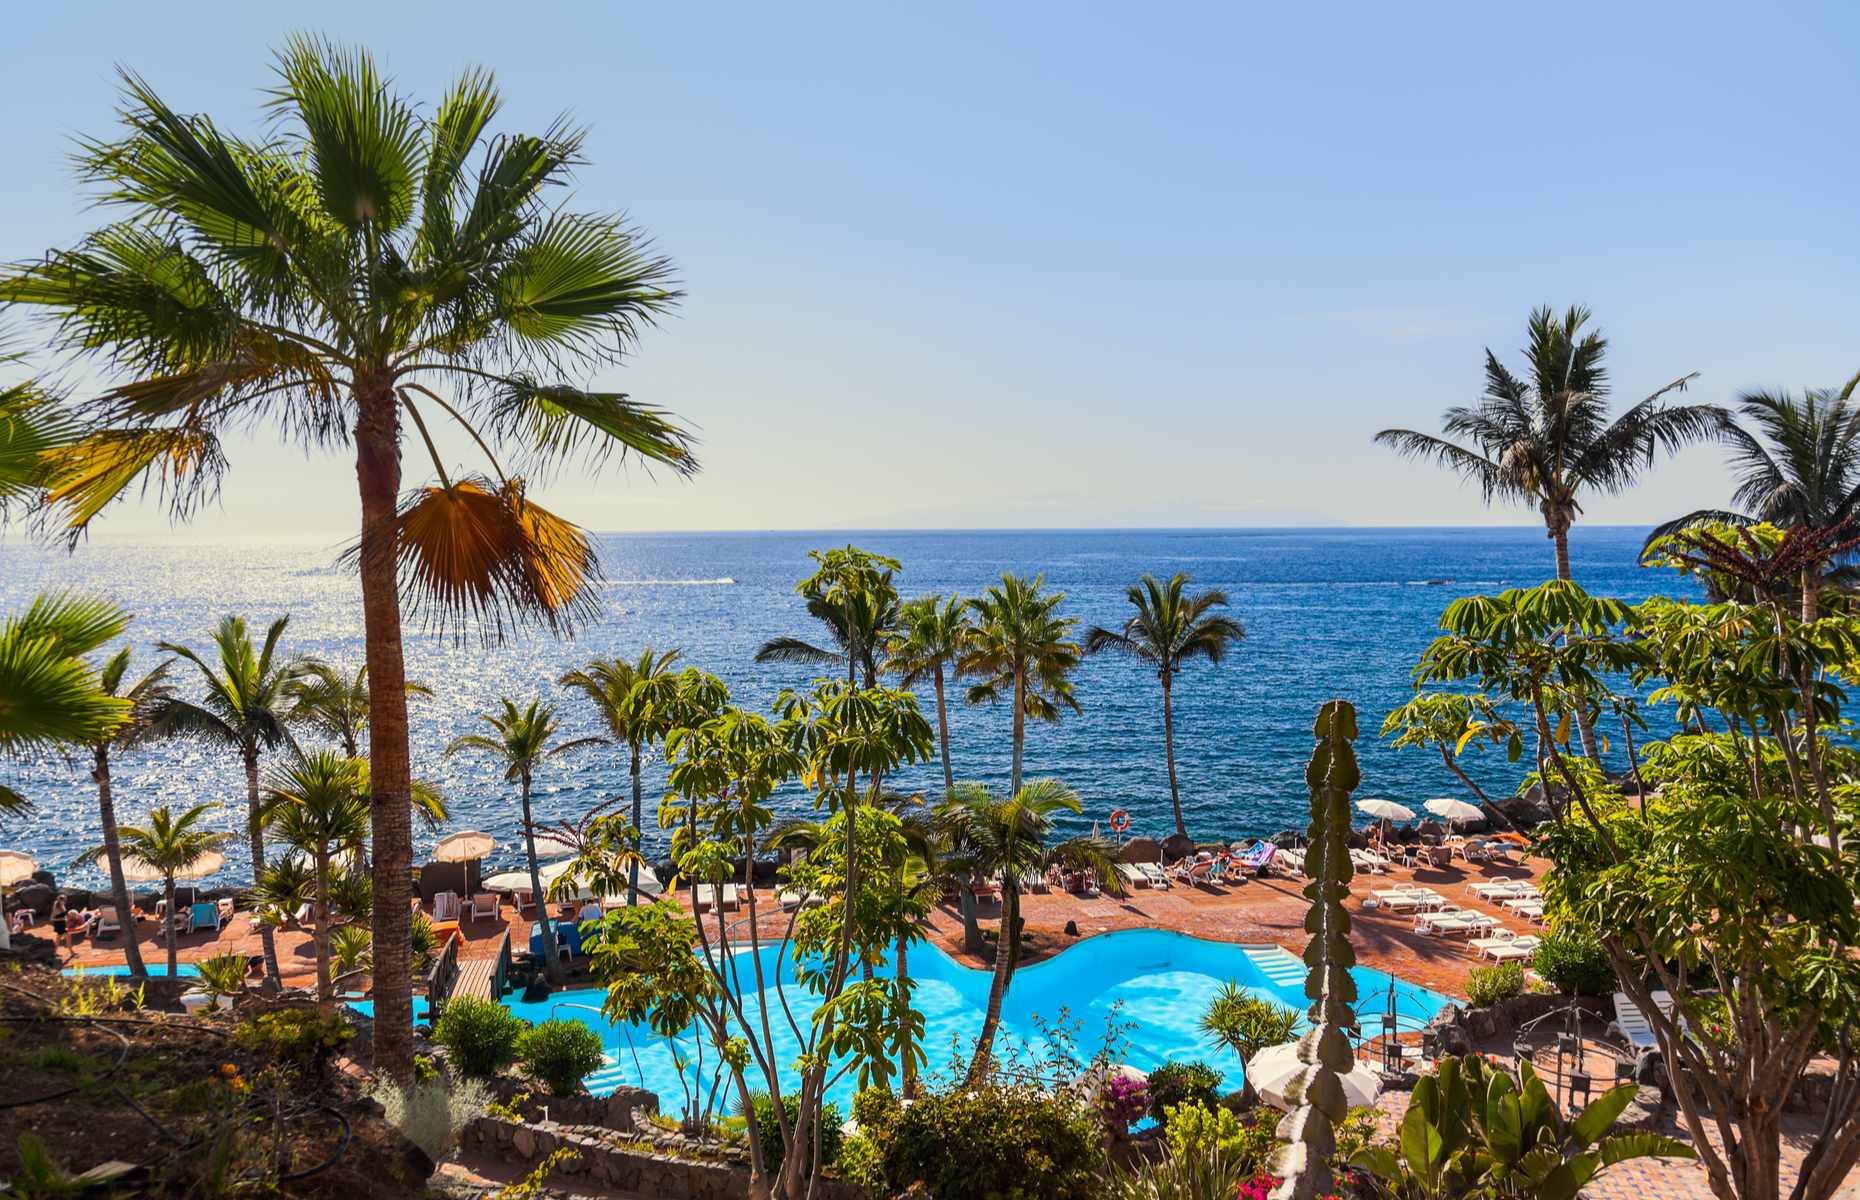 Beach resort in Tenerife (image: Tatiana Popova/Shutterstock)